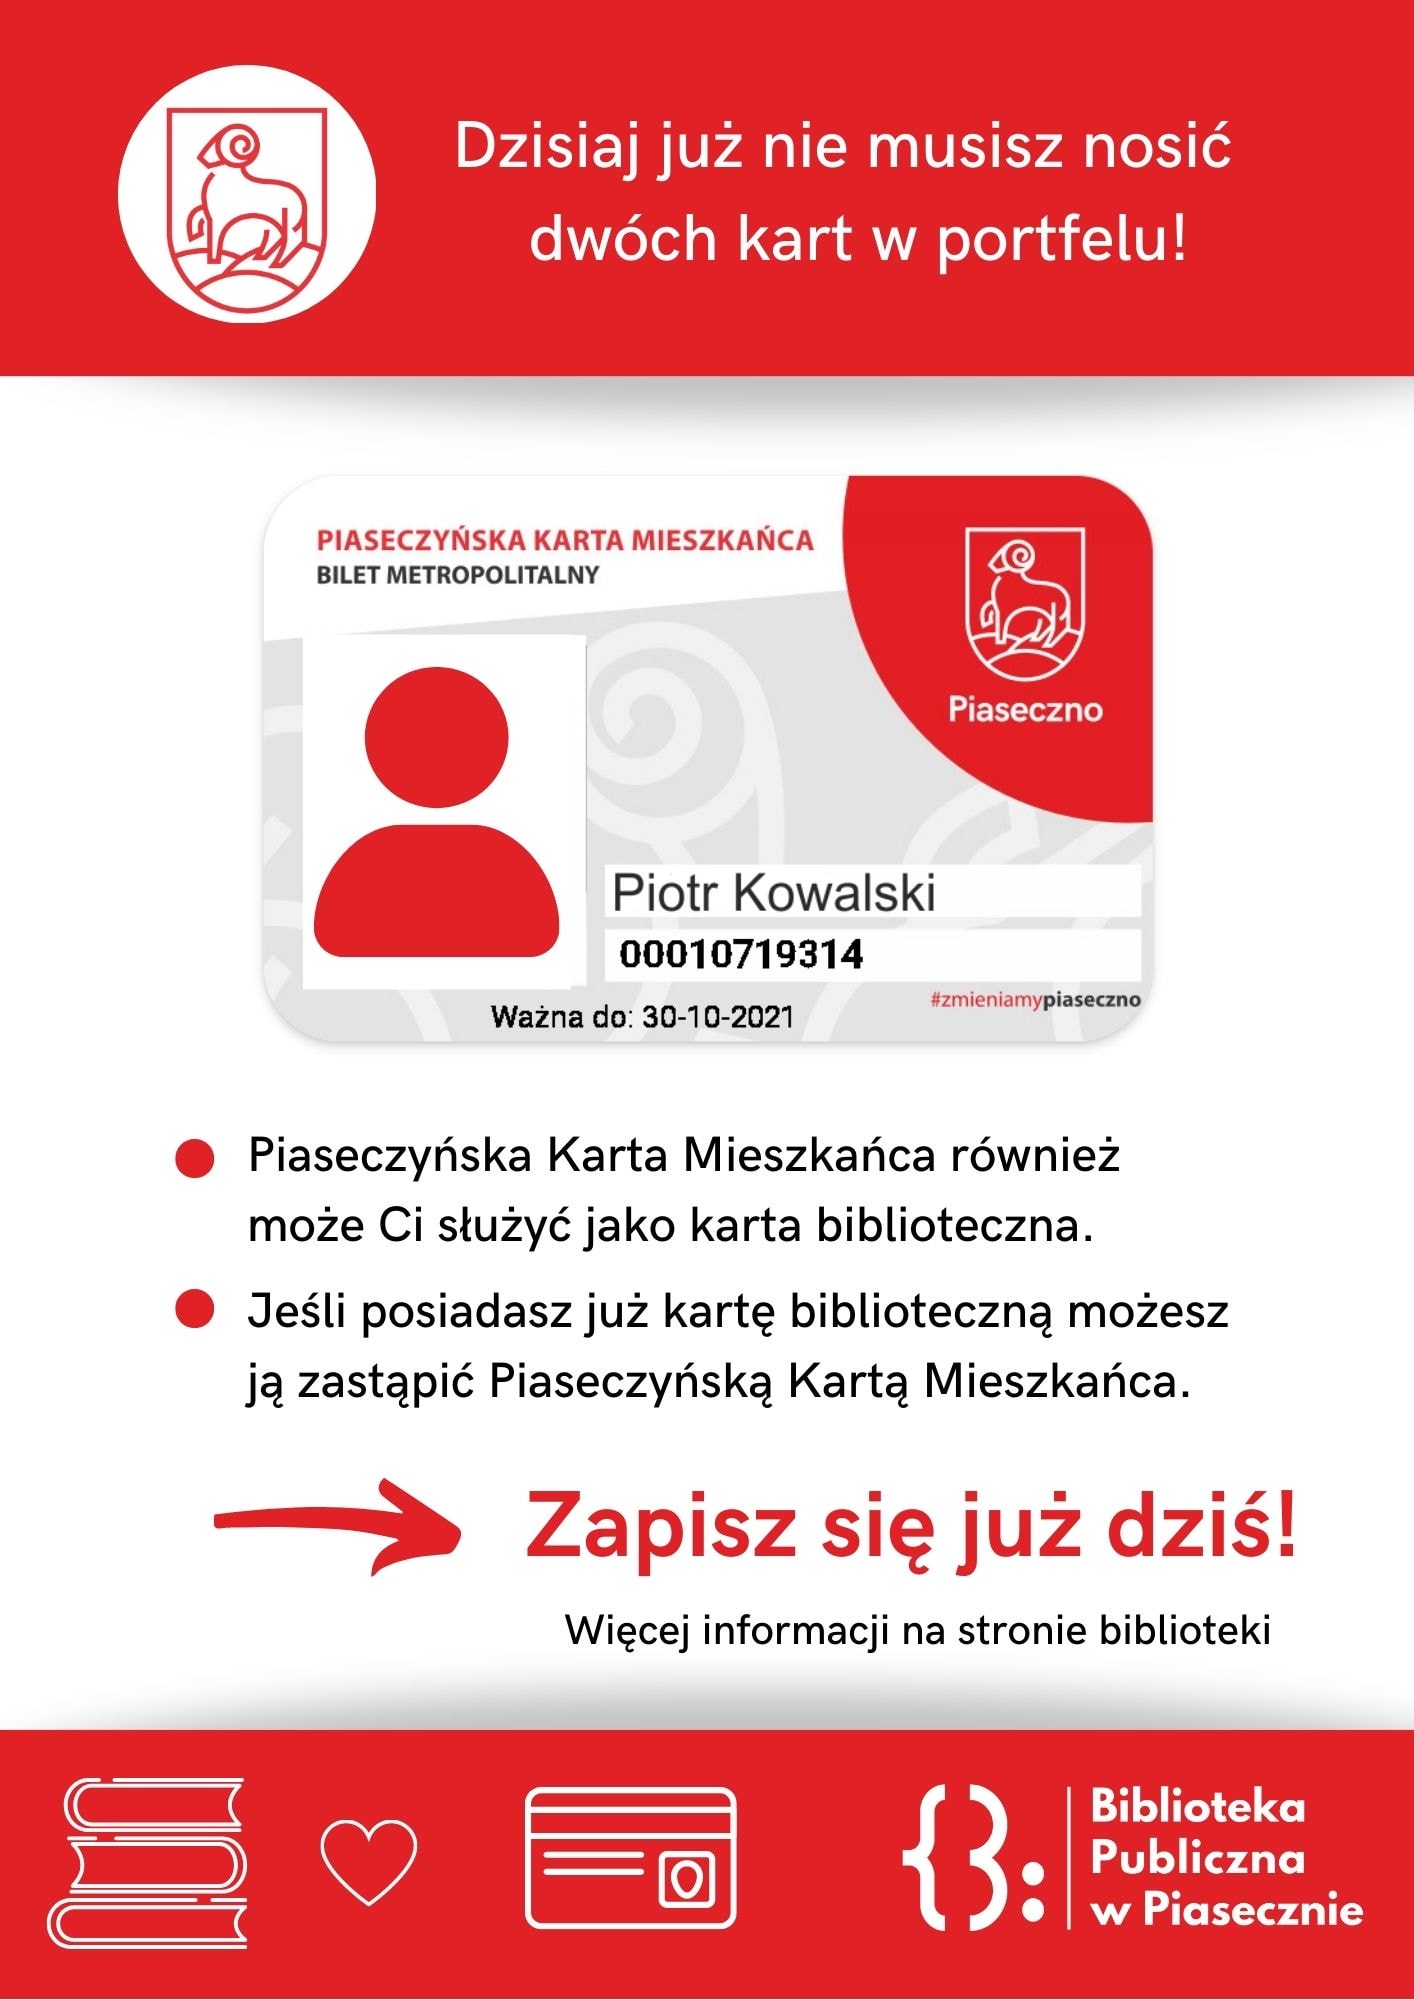 Plakat informacyjny dotyczący Piaseczyńskiej Karty Mieszkańca ii Karty Bibliotecznej.